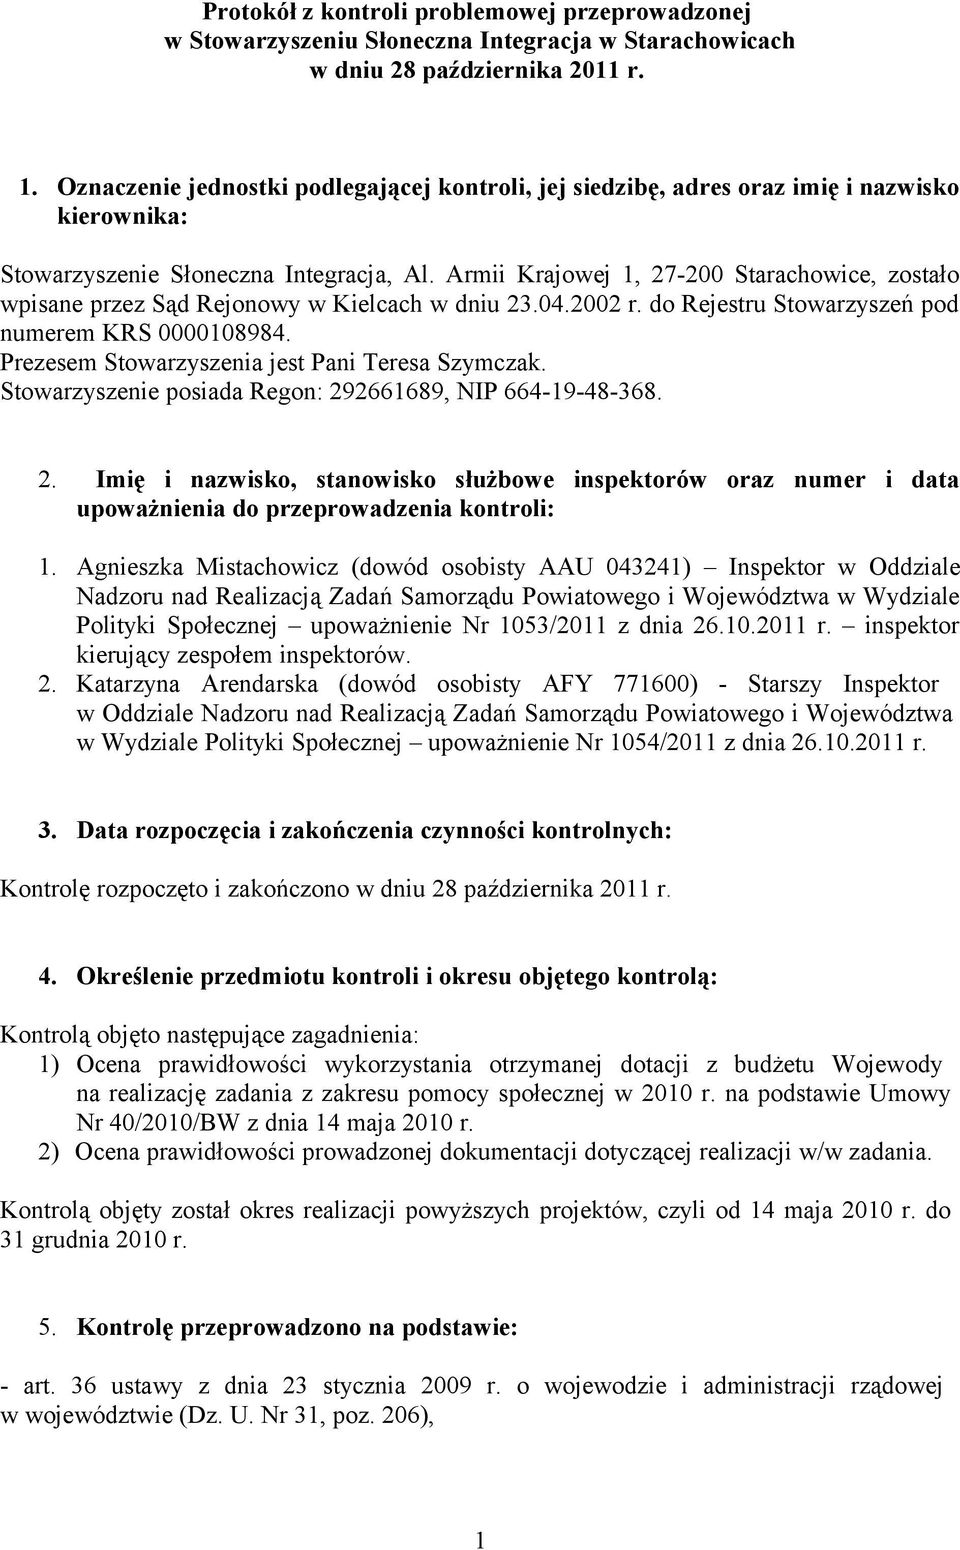 Armii Krajowej 1, 27-200 Starachowice, zostało wpisane przez Sąd Rejonowy w Kielcach w dniu 23.04.2002 r. do Rejestru Stowarzyszeń pod numerem KRS 0000108984.